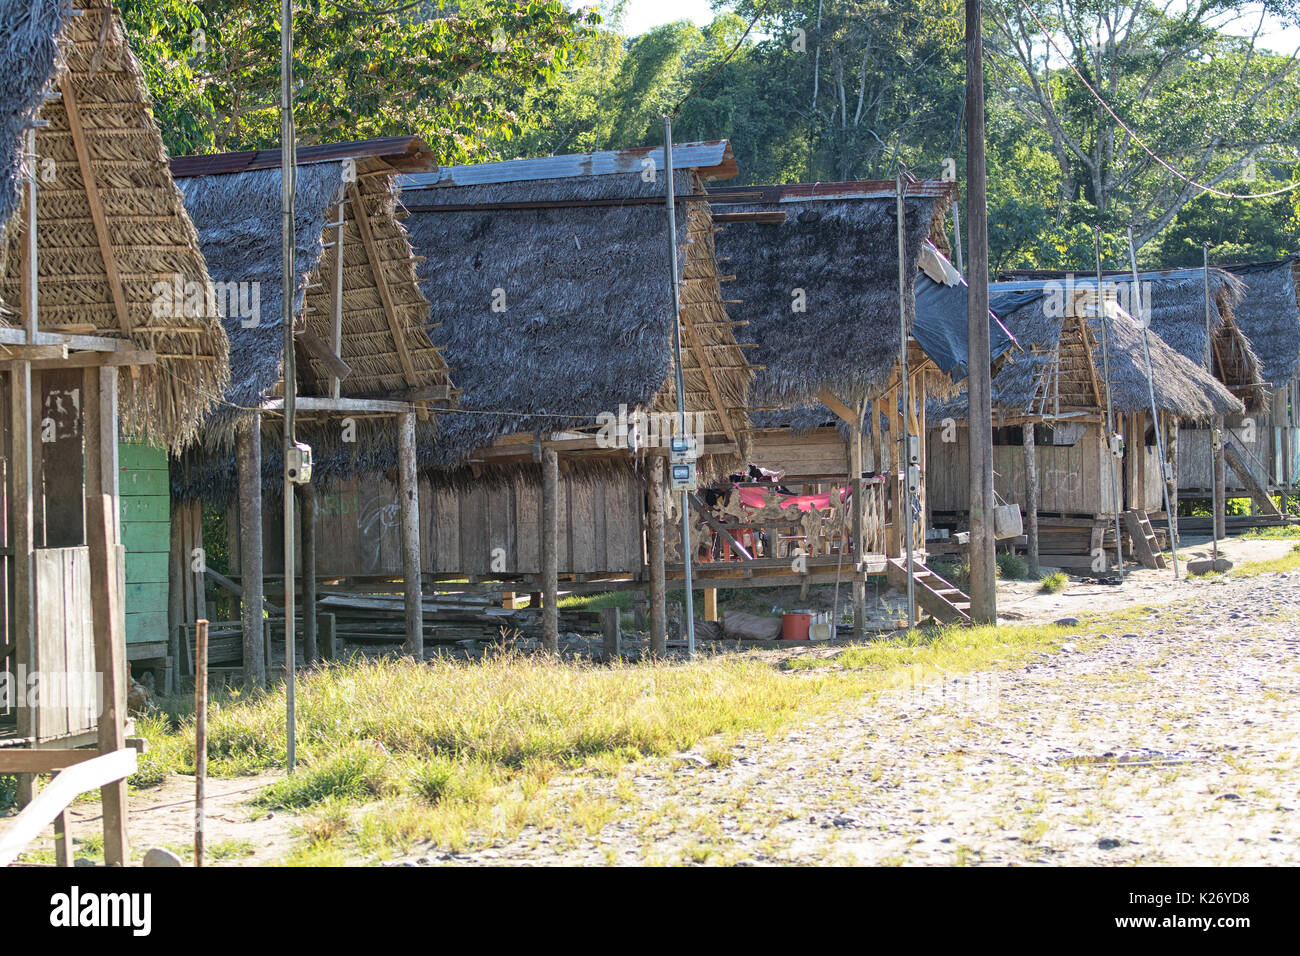 June 6, 2017 Misahualli, Ecuador: row of small habitation shacks made of wood planks in the Amazon area Stock Photo